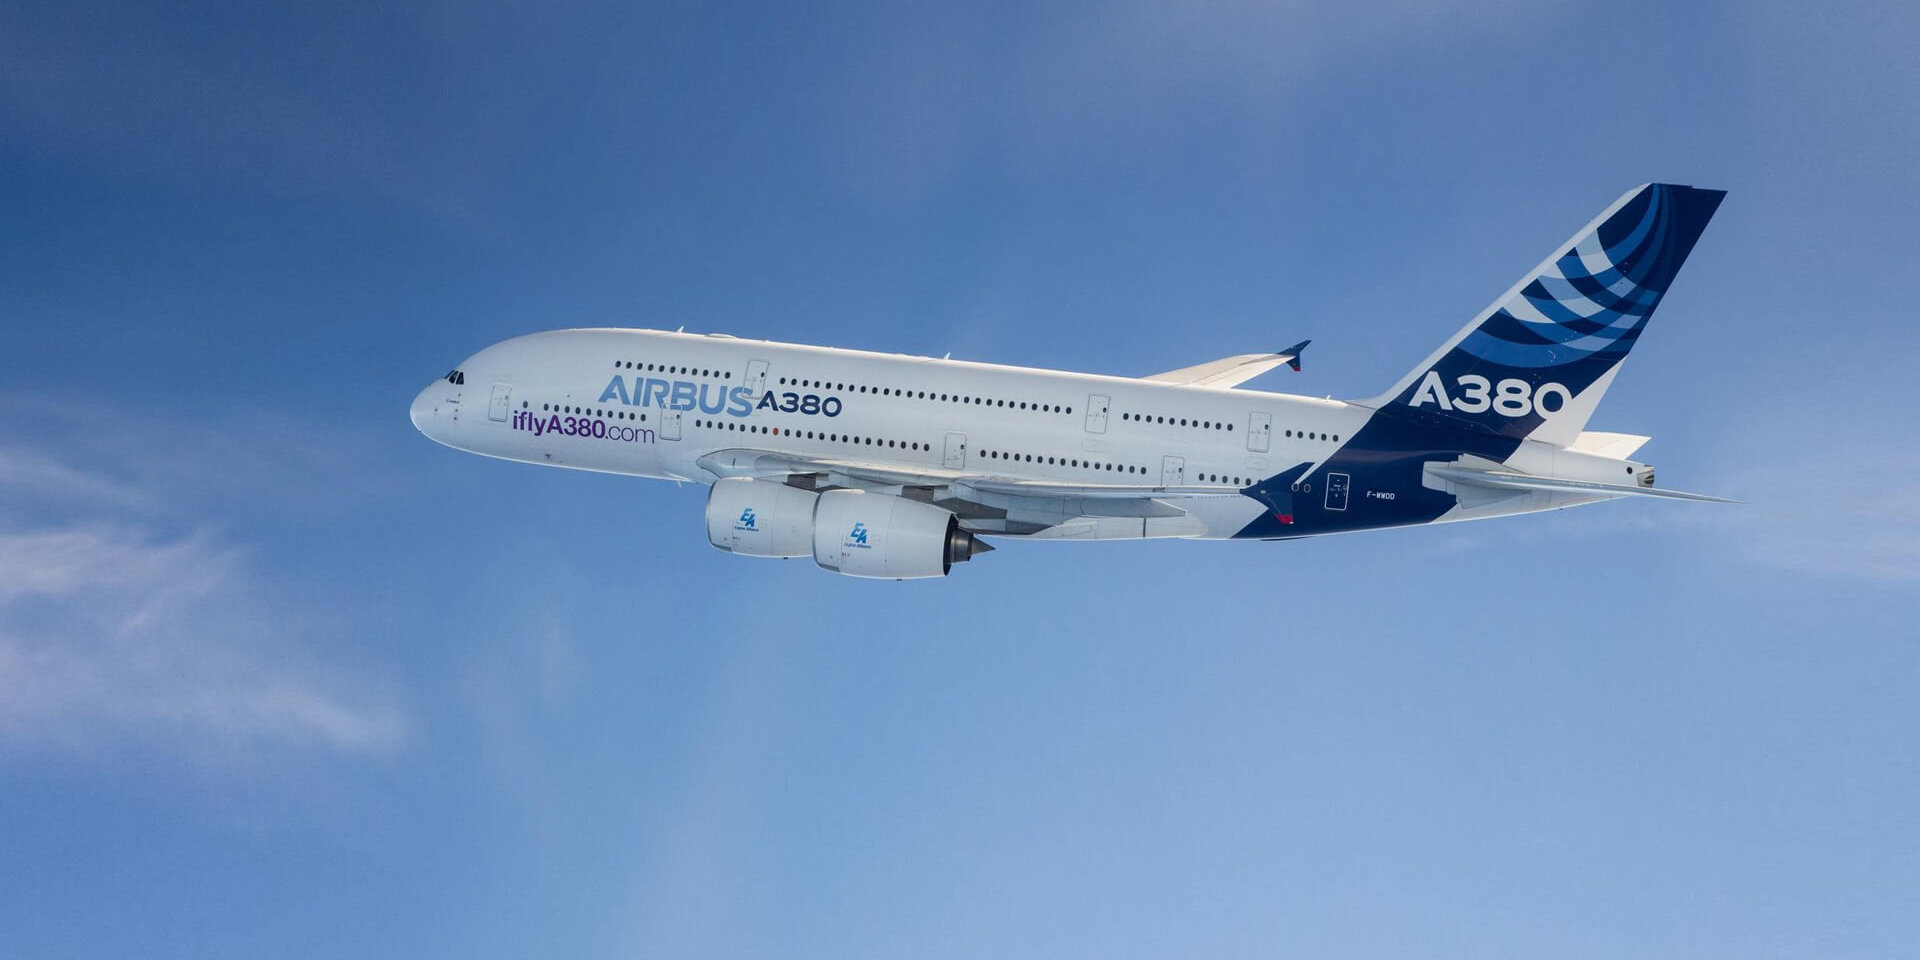 Ist Die Airbus Aktie Jetzt Ein Kauf Airbus Aktienanalyse Marco Die Finanzeule